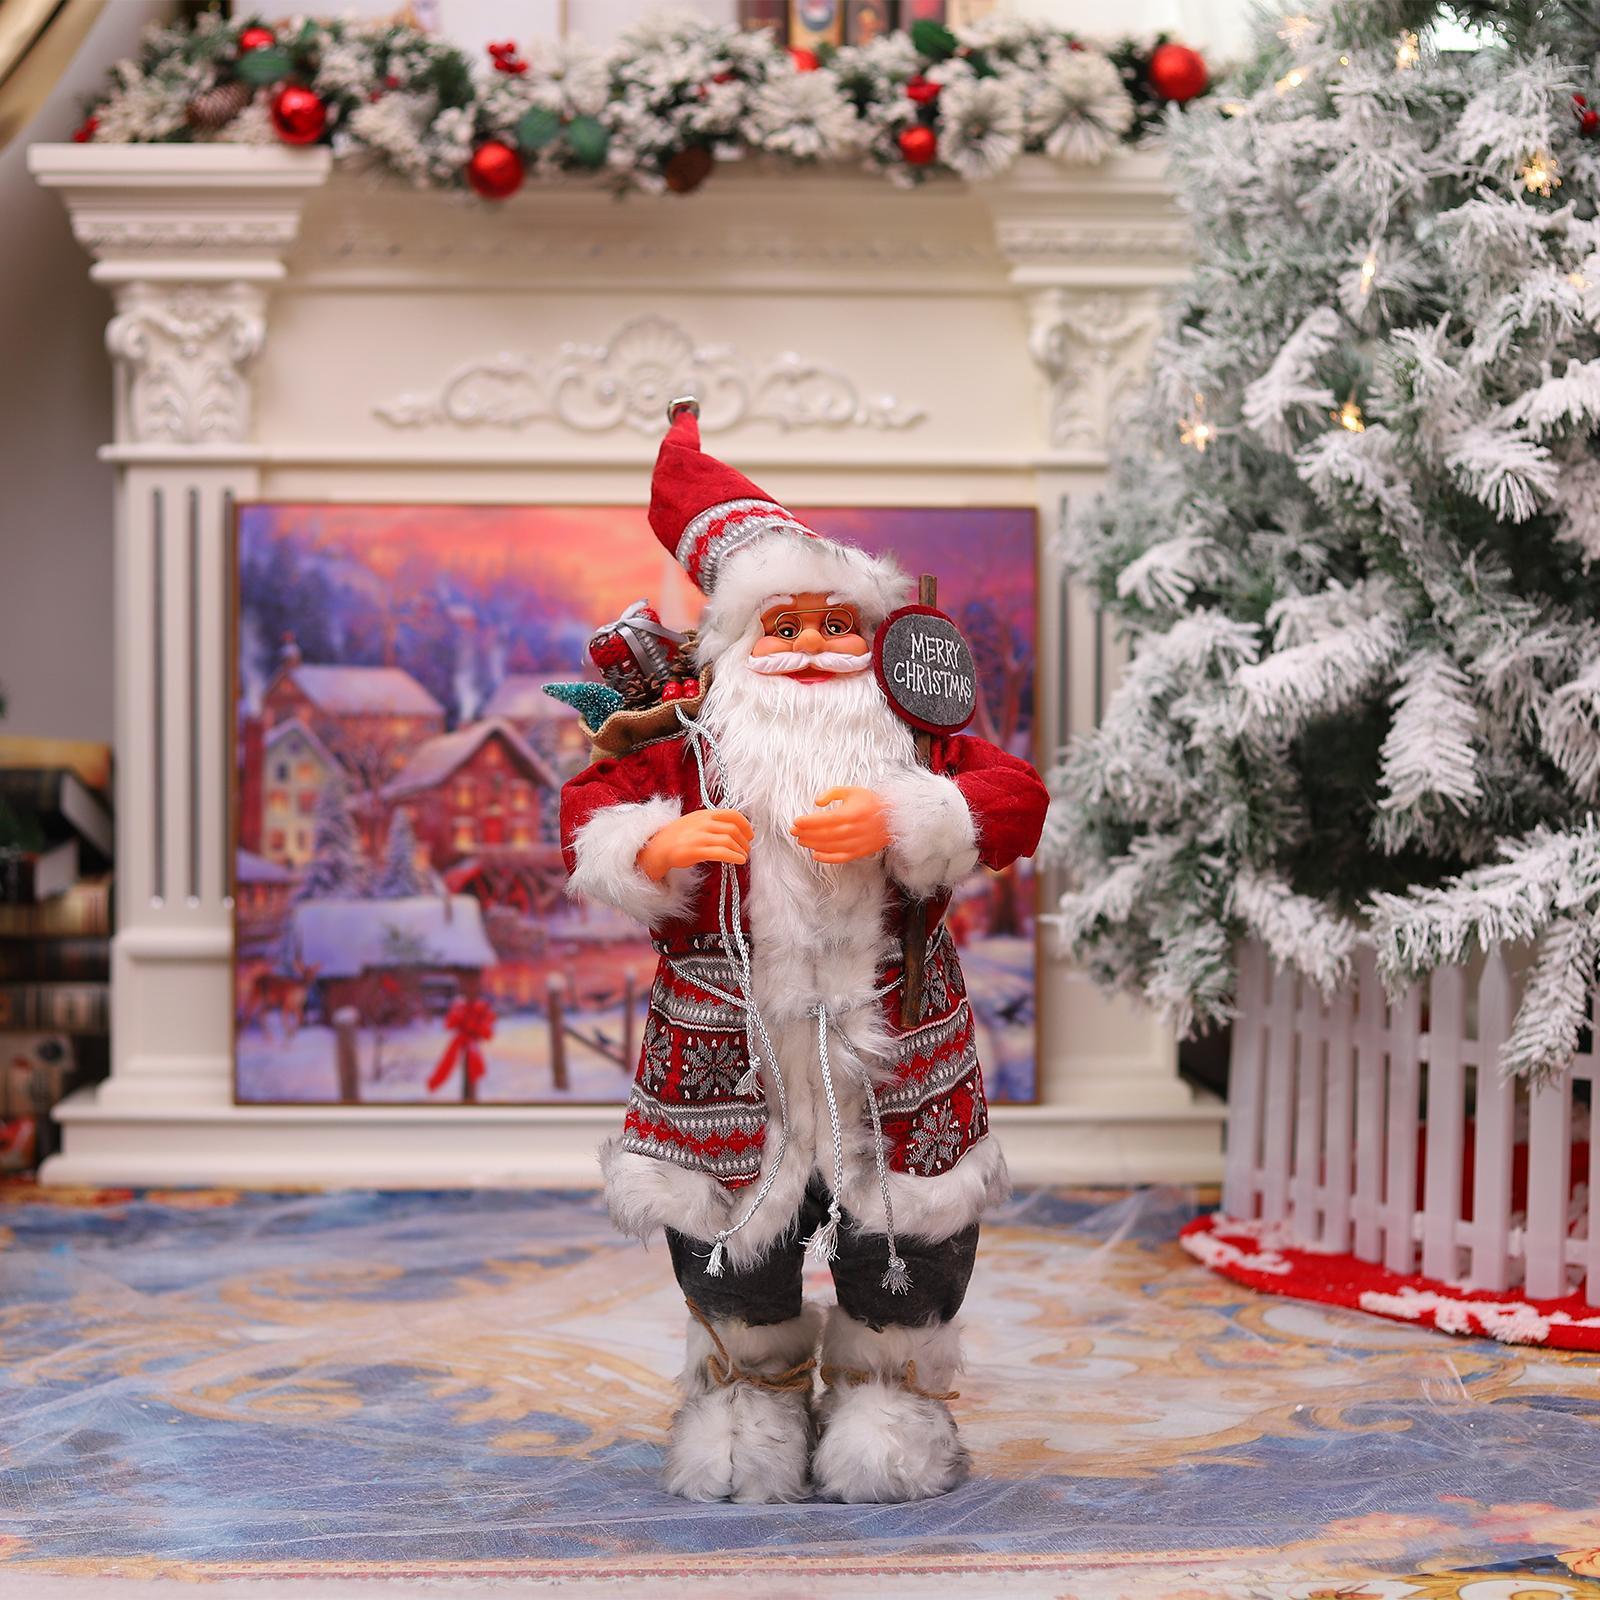 Gia Decor Giáng Sinh đã có thêm một thiết kế tuyệt vời: Santa Claus Figurine Ornament Decoration! Những chiếc đồ trang trí này sẽ mang lại không khí Giáng Sinh ấm áp và đầy phấn khích cho gia đình bạn. Hãy xem hình ảnh ngay để cảm nhận được sự tinh tế và độc đáo của sản phẩm này.